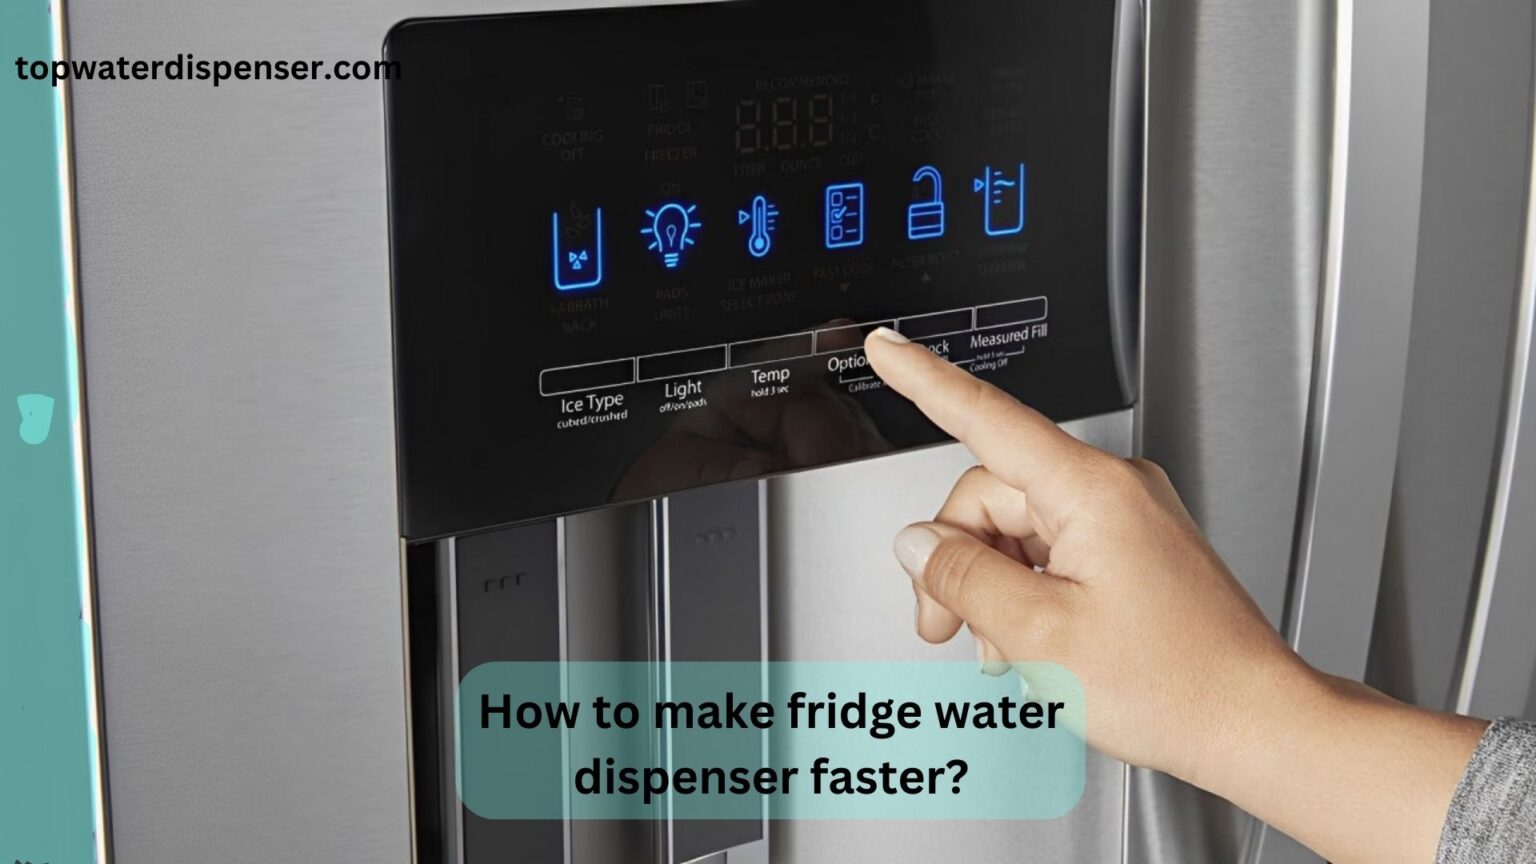 How to make fridge water dispenser faster?